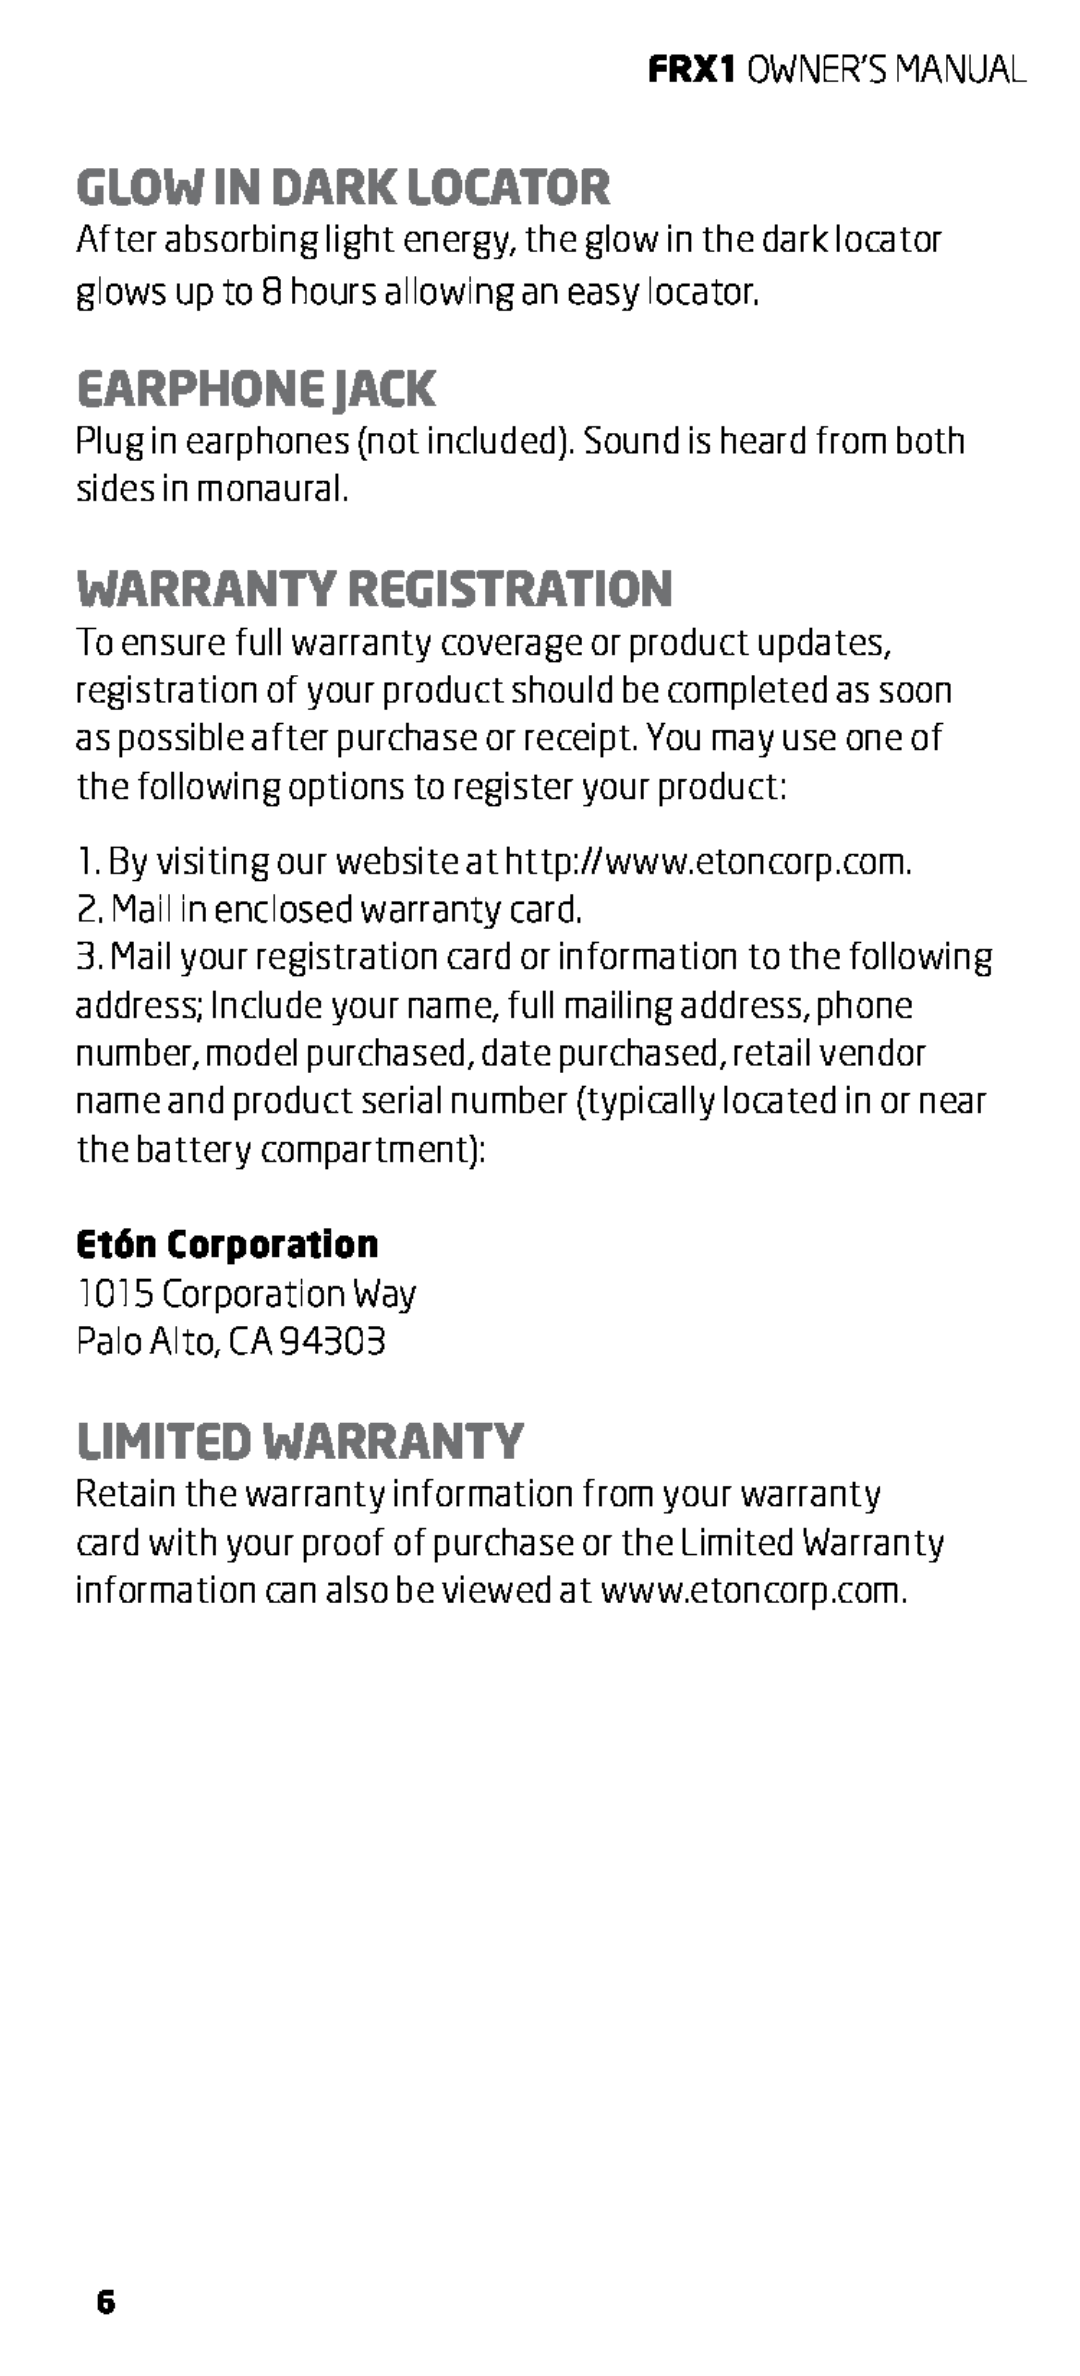 Eton FRX1 owner manual Glow In Dark Locator, Earphone Jack, Warranty Registration, Limited Warranty, Etón Corporation 